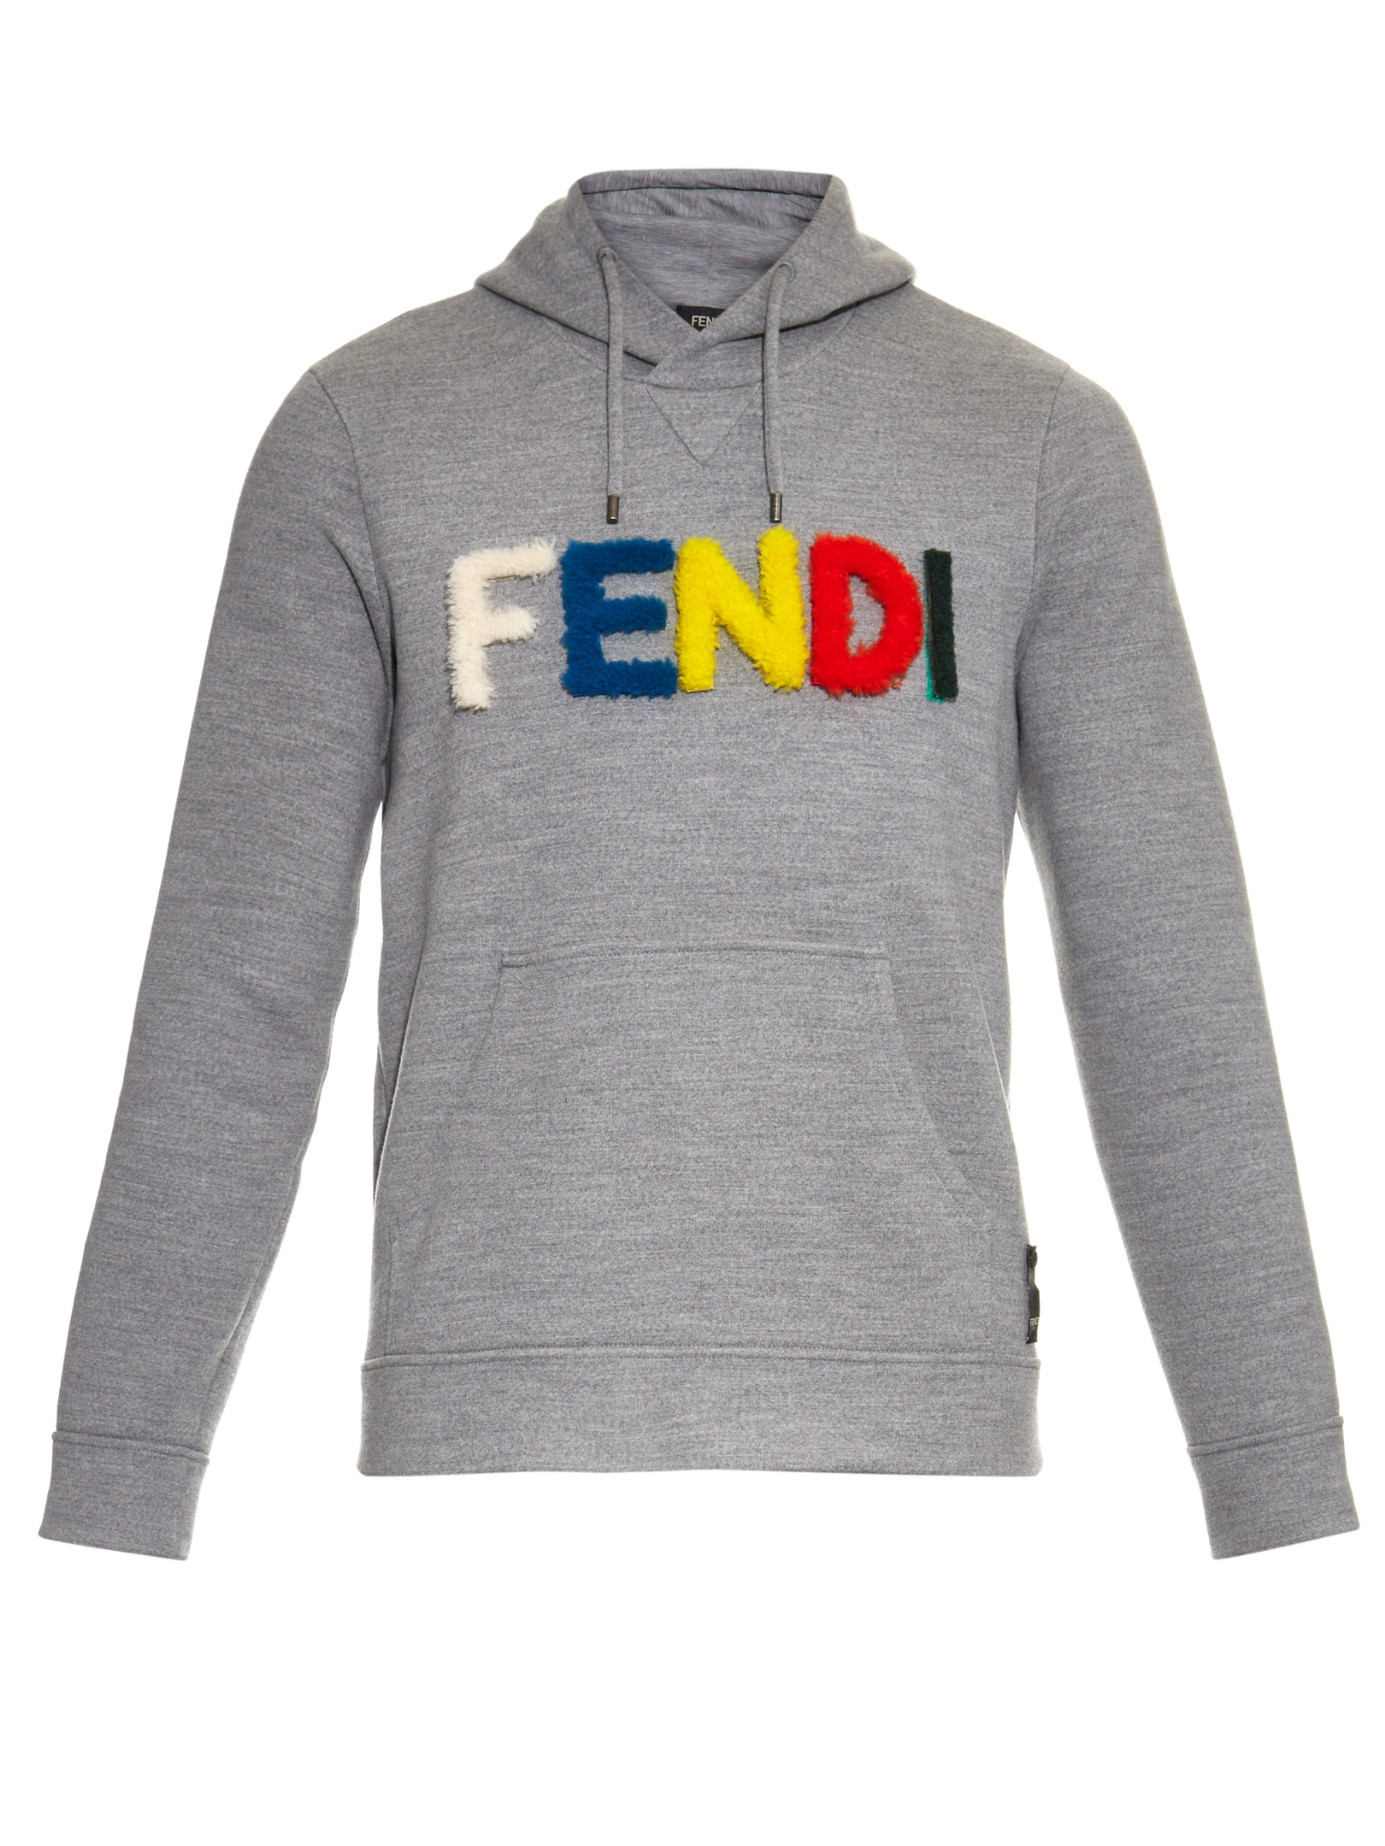 Fendi Monster Wool Hooded Sweater in Gray for Men - Lyst